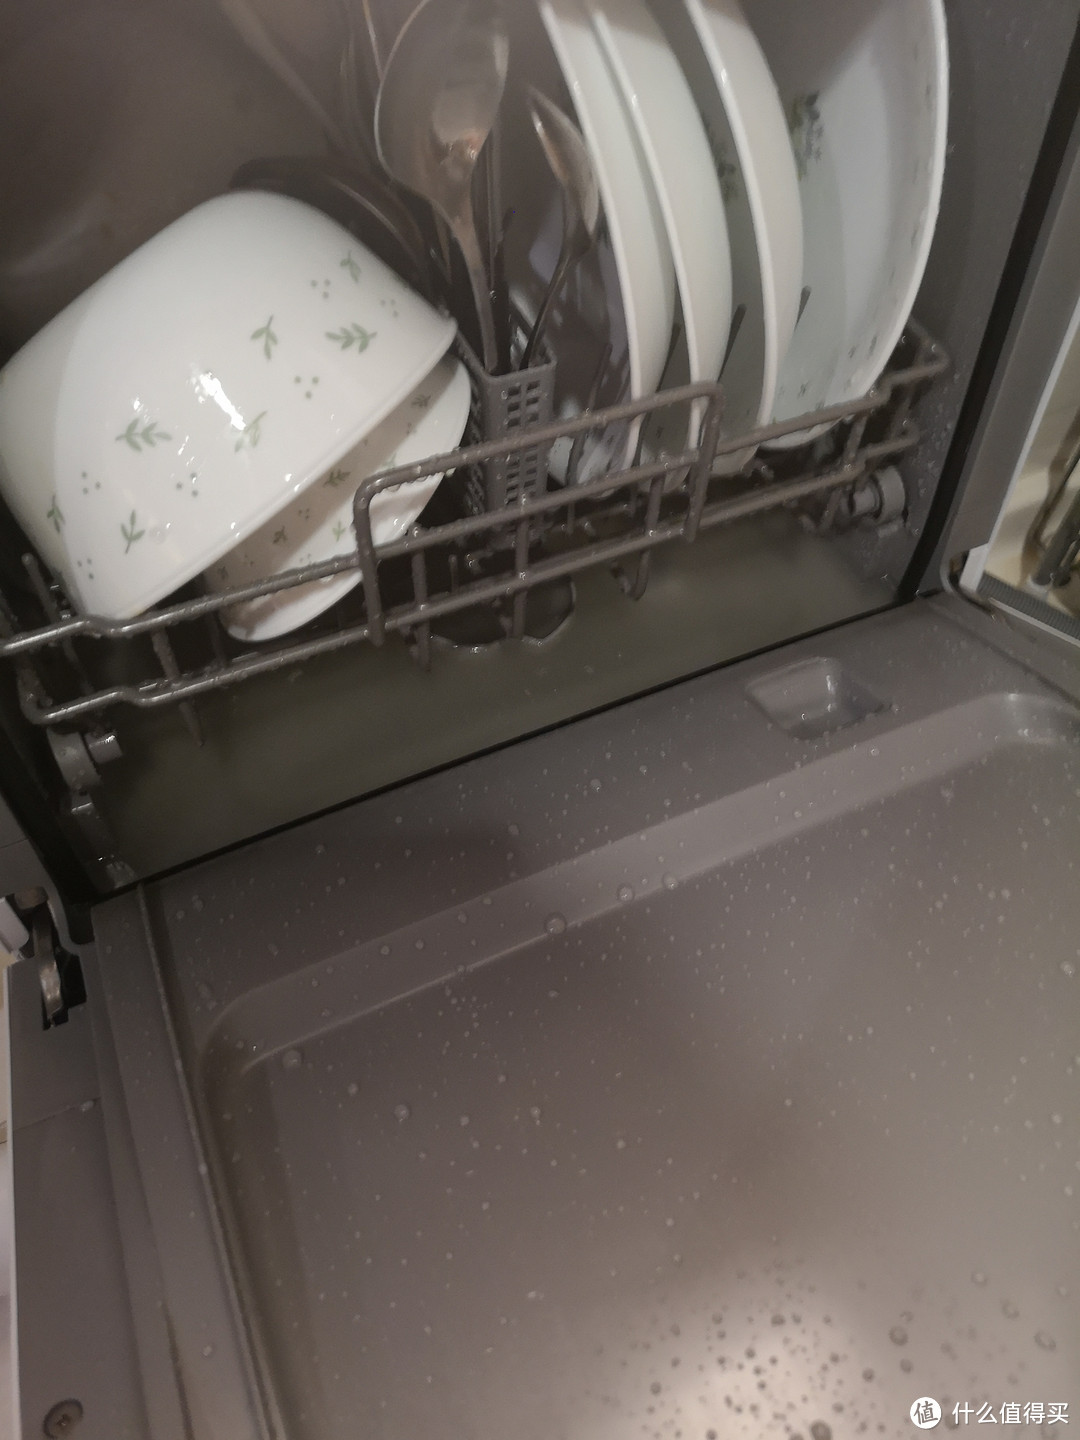 将洗碗槽滤摆放在不容易掉进底部的位置